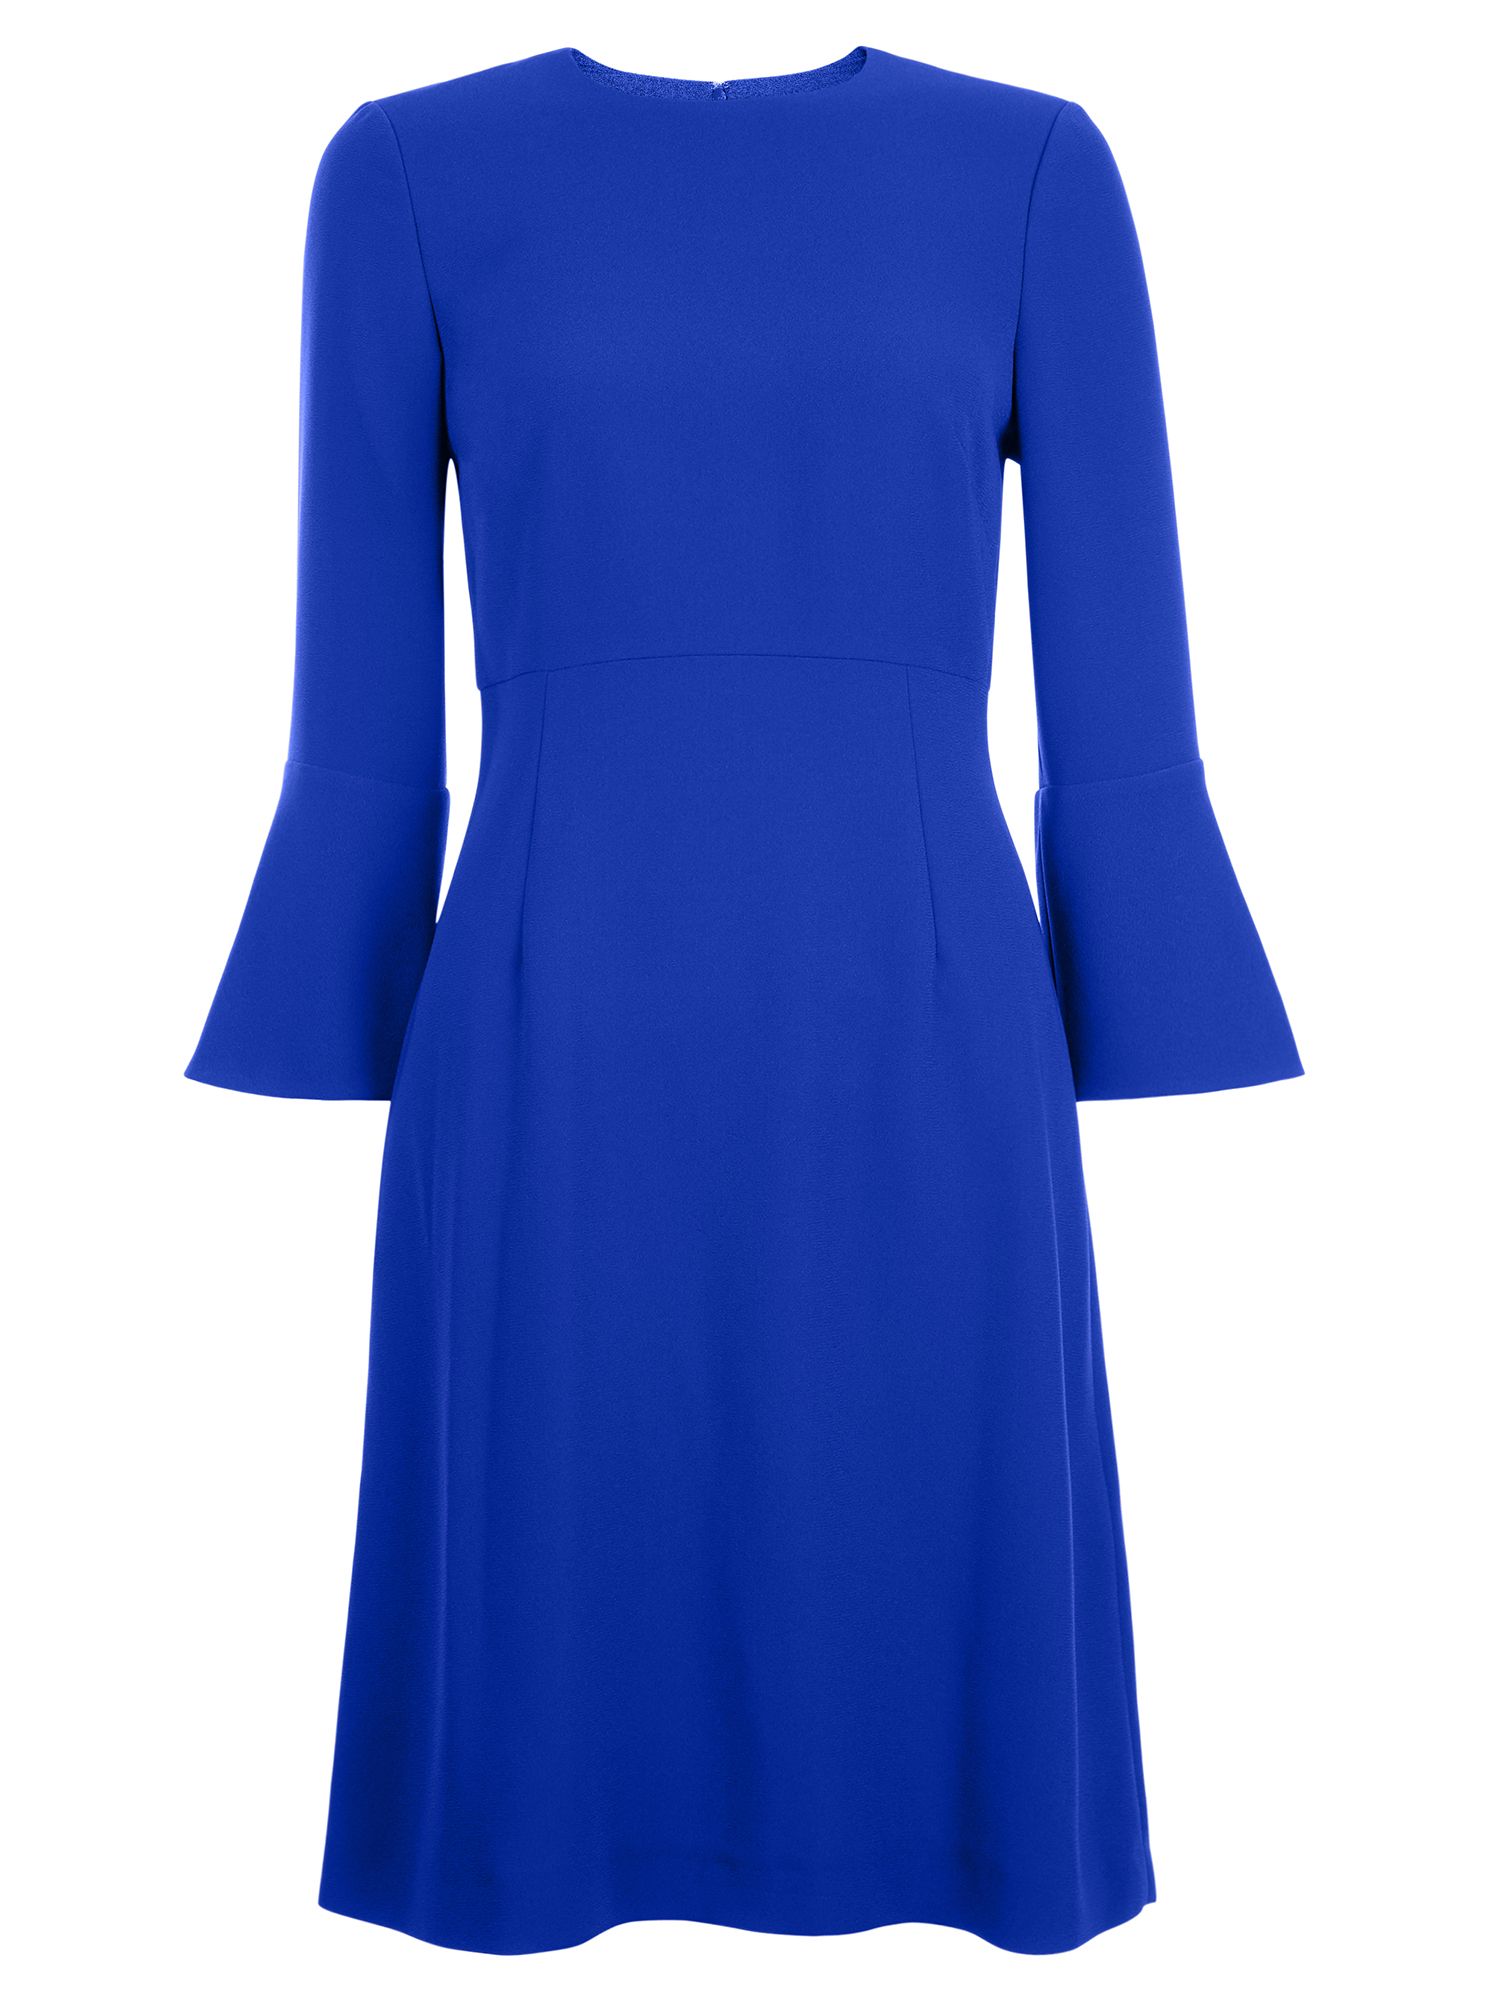 hobbs cobalt blue dress